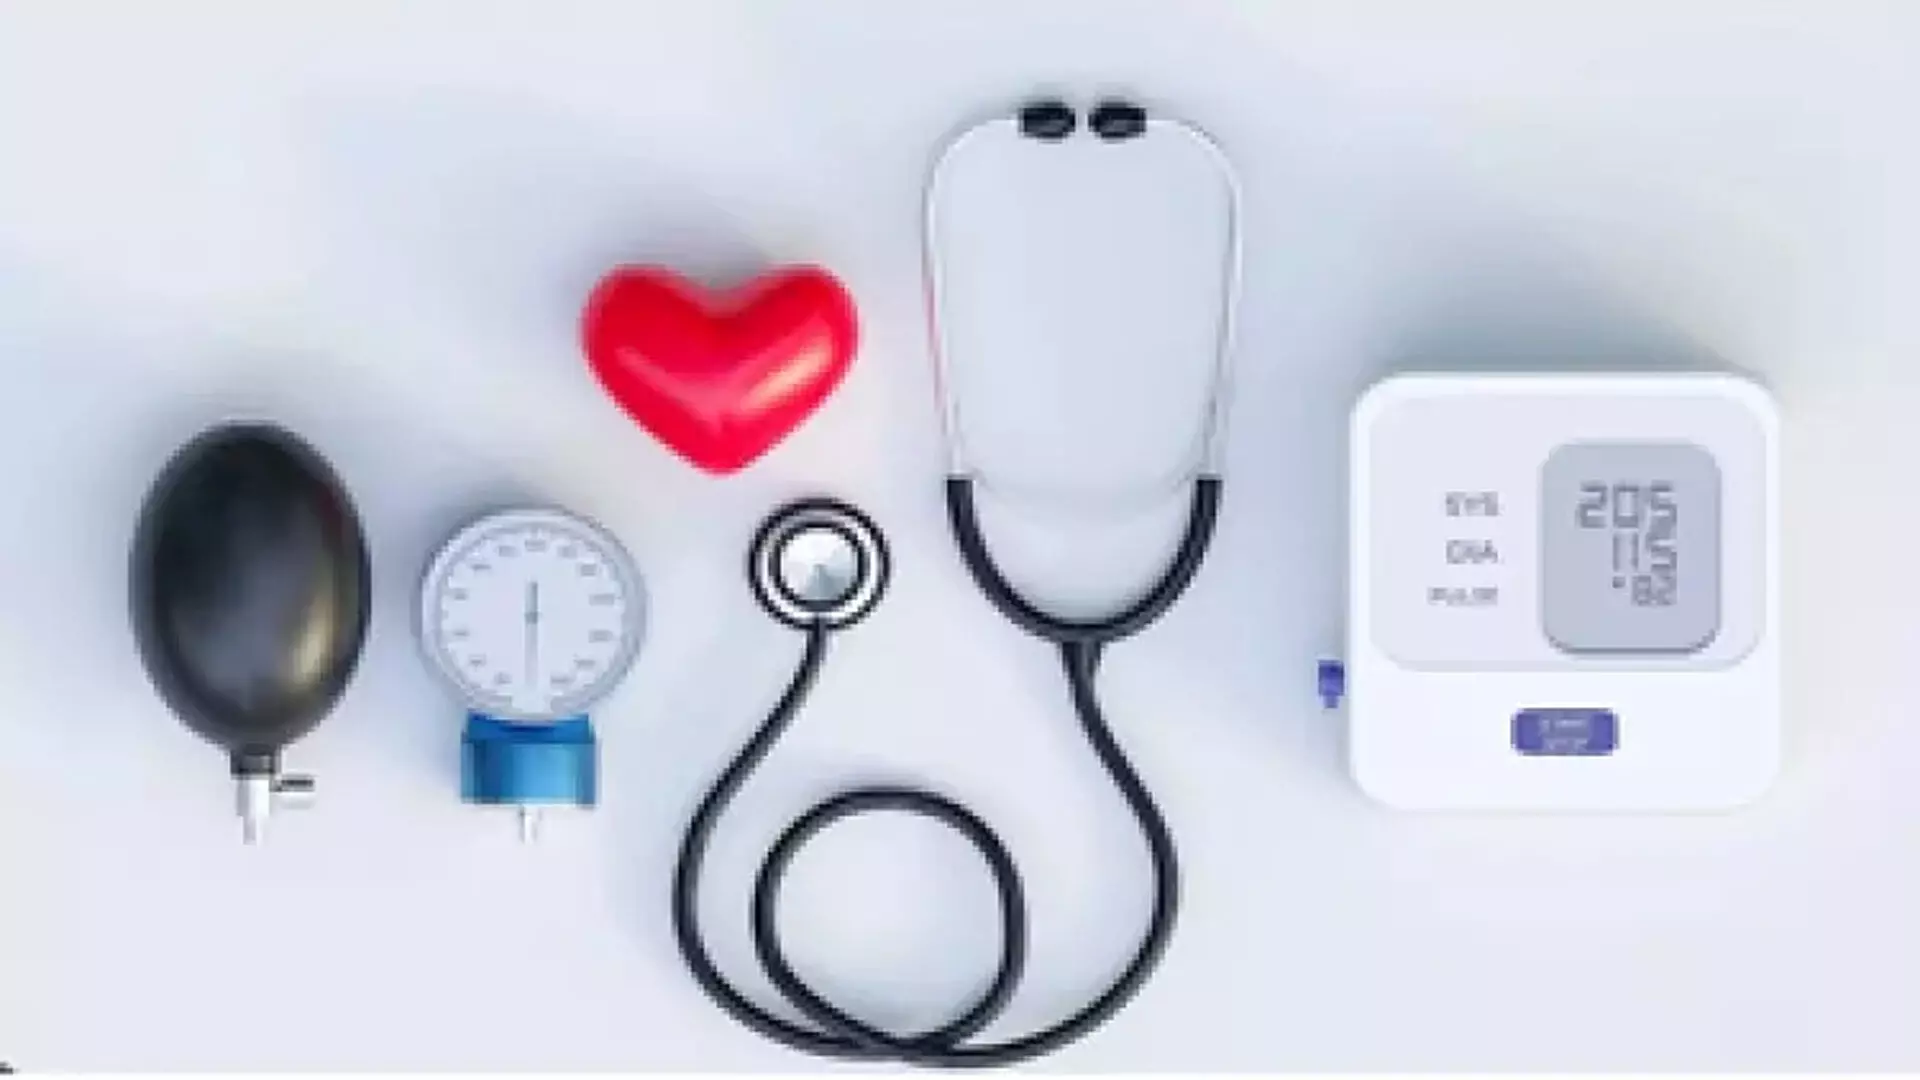 Doctors को उच्च रक्तचाप के रोगियों में हृदय जोखिमों पर विचार करना चाहिए- Study